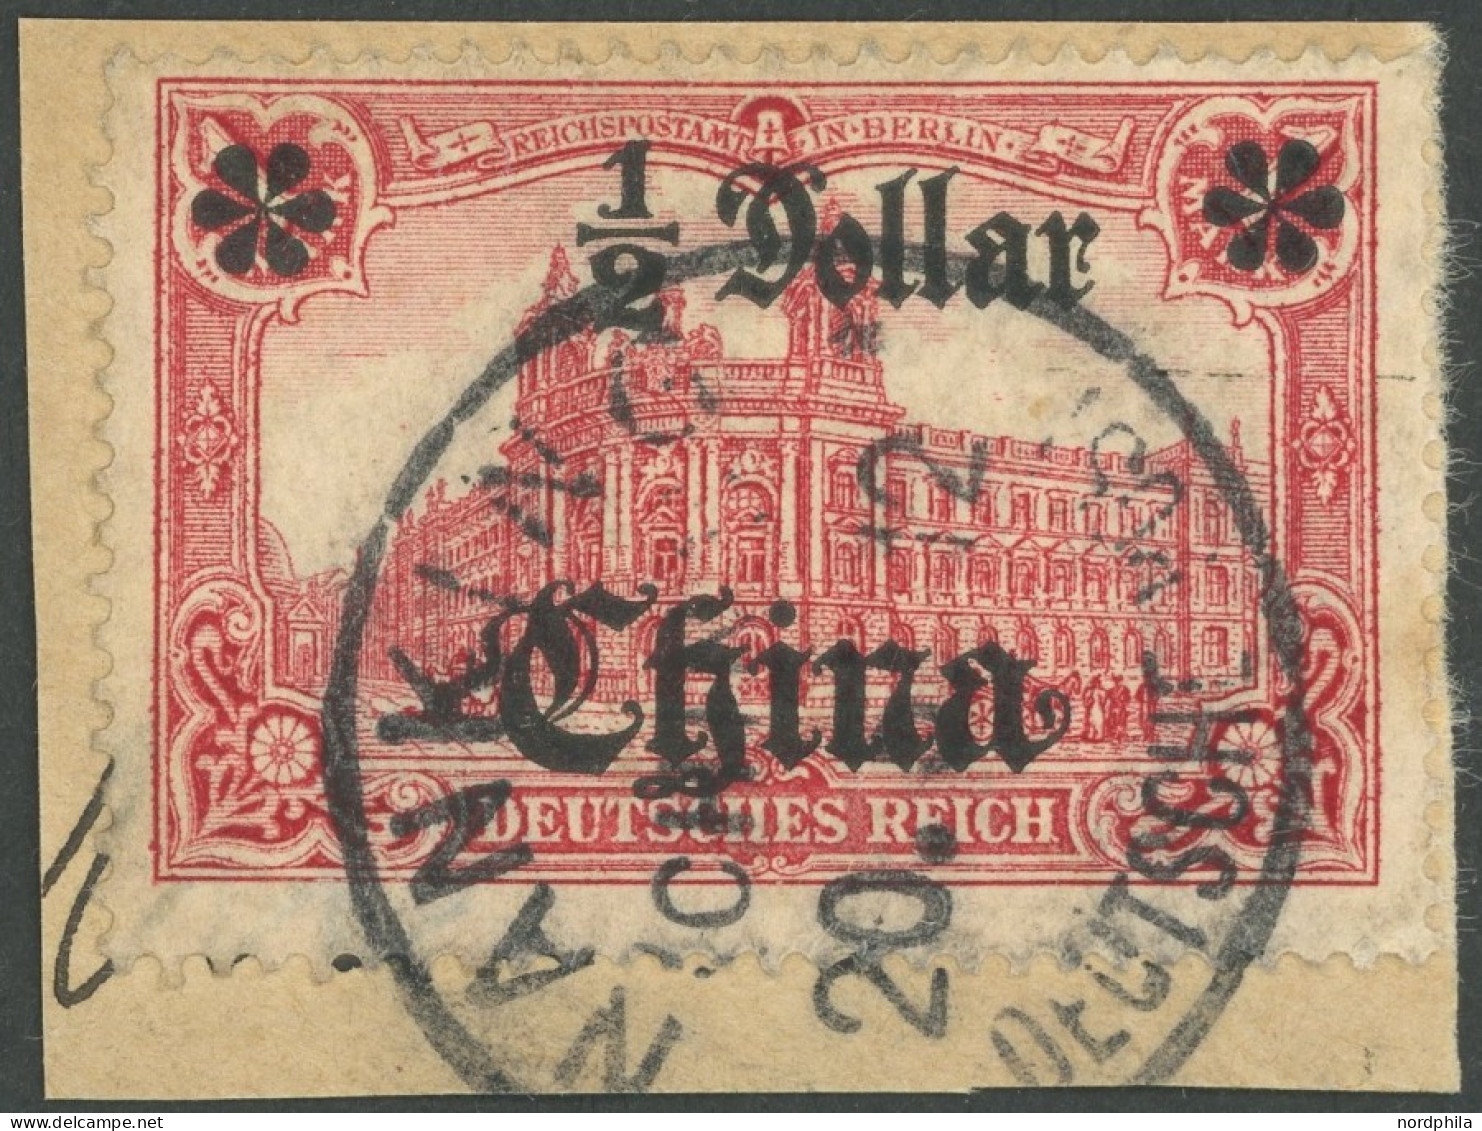 DP CHINA 44IAI BrfStk, 1906, 1/2 D. Auf 1 M., Mit Wz., Friedensdruck, Abstand 9 Mm, Stempel NANKING, Prachtbriefstück - China (kantoren)